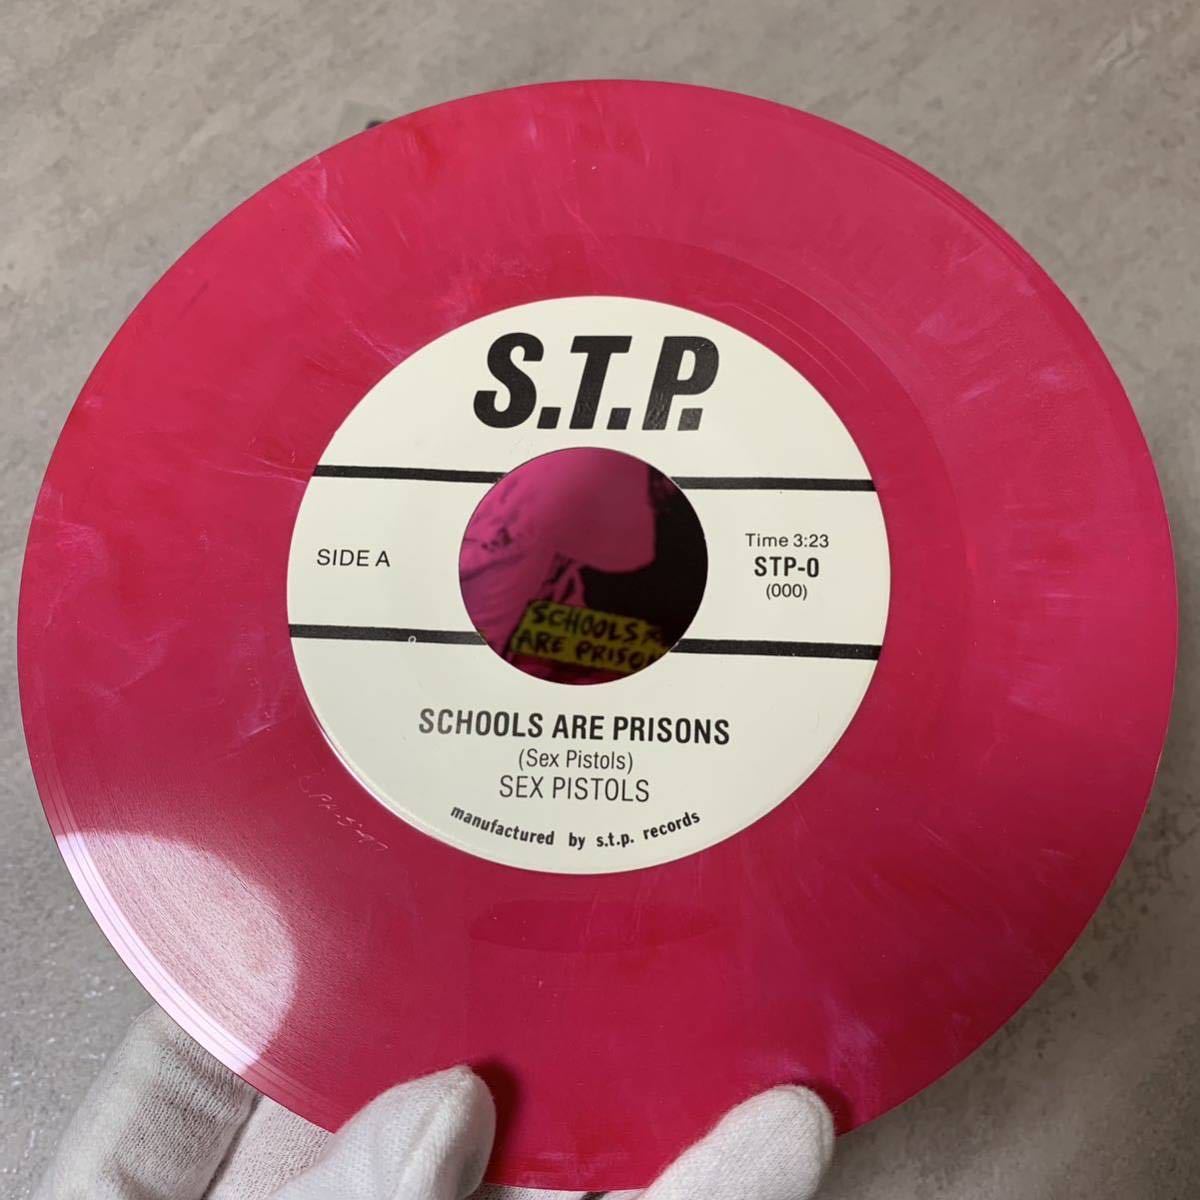 【未発表曲 シングル盤】SEX PISTOLS SCHOOLS ARE PRISONS セックスピストルズ LP EP レコード アナログ 45RPM ドーナツ盤 7inch インチ_画像3